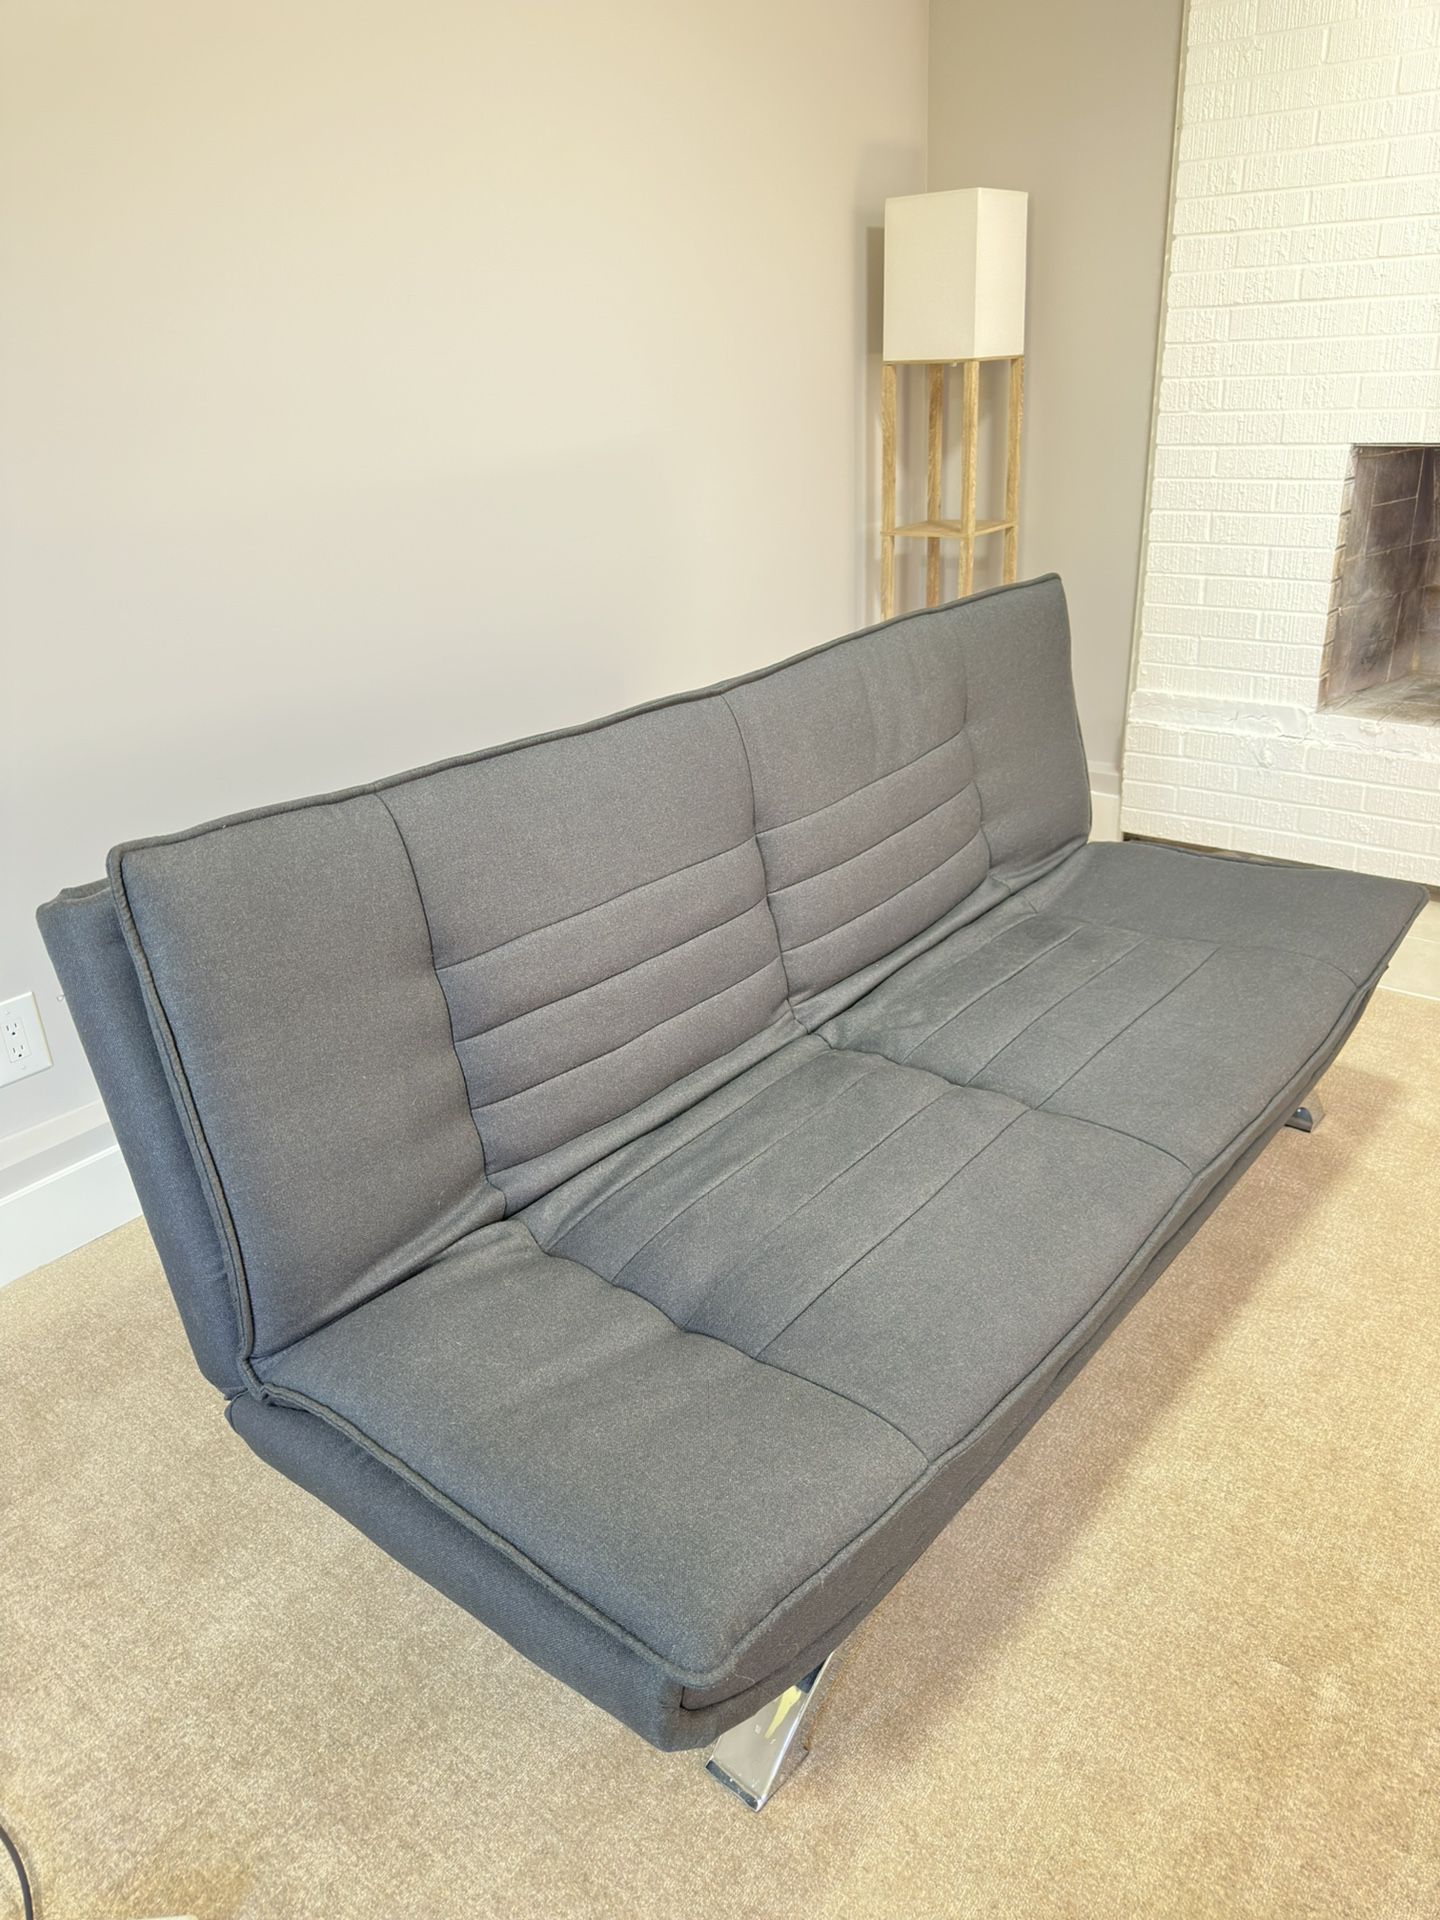 Convertible Futon Sofa Bed